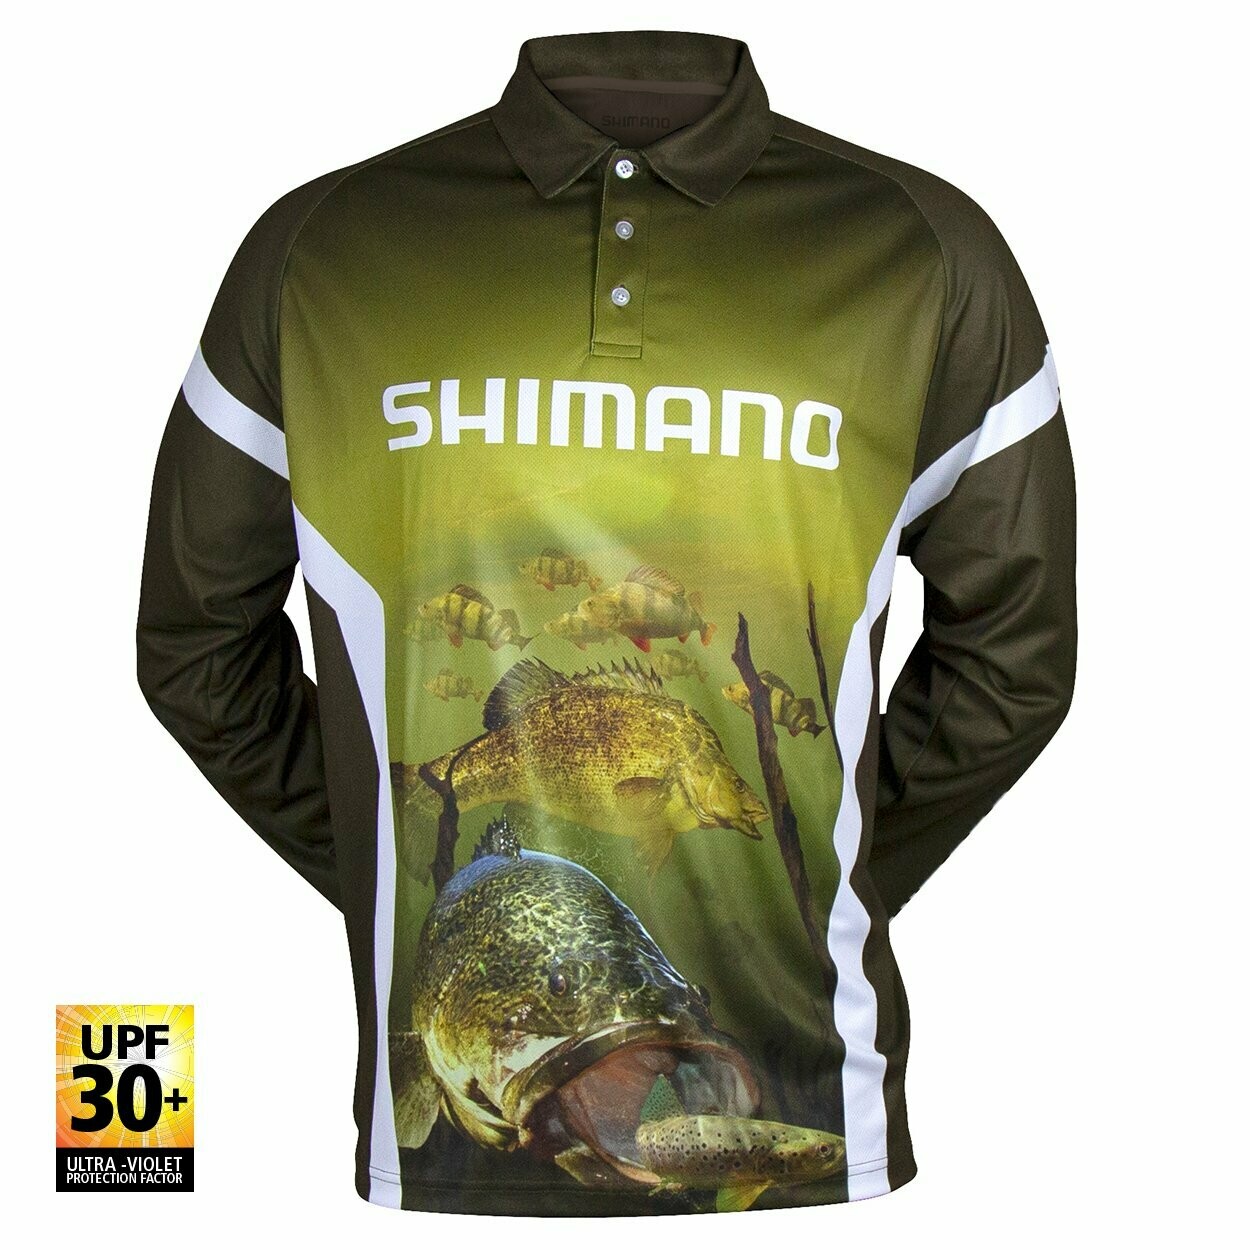 Shimano Native Southern Series Fishing Shirt